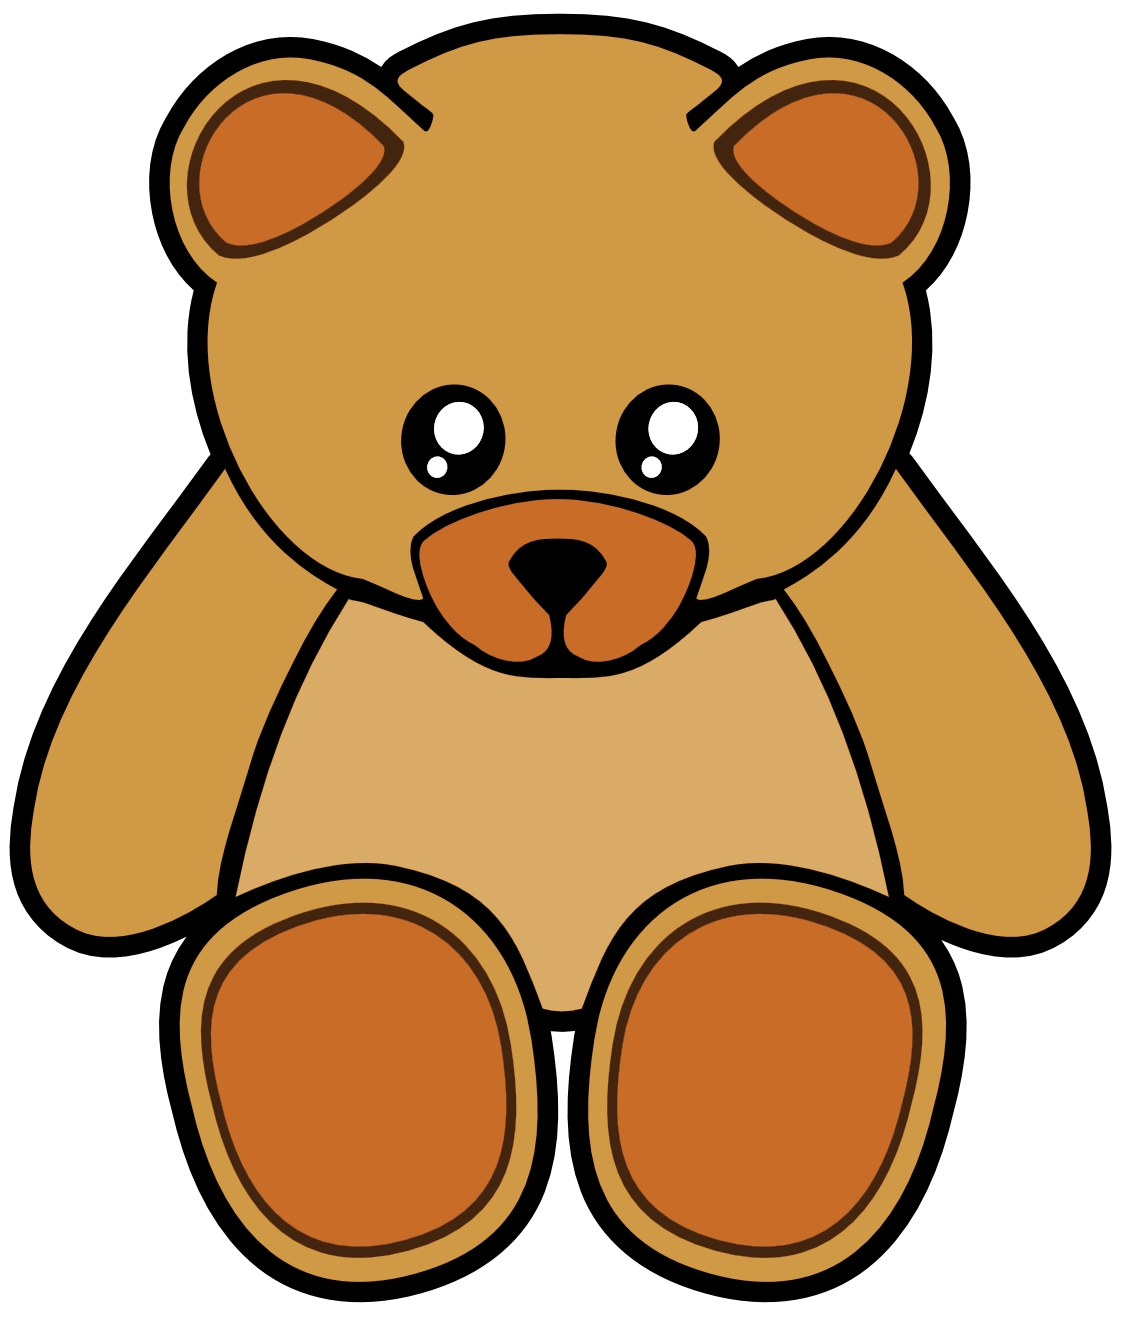 Teddy Bear Label Clipart Teddy Bear Foil Jpg Teddy Bear Gold Textured Teddy Bear Foil Label Image